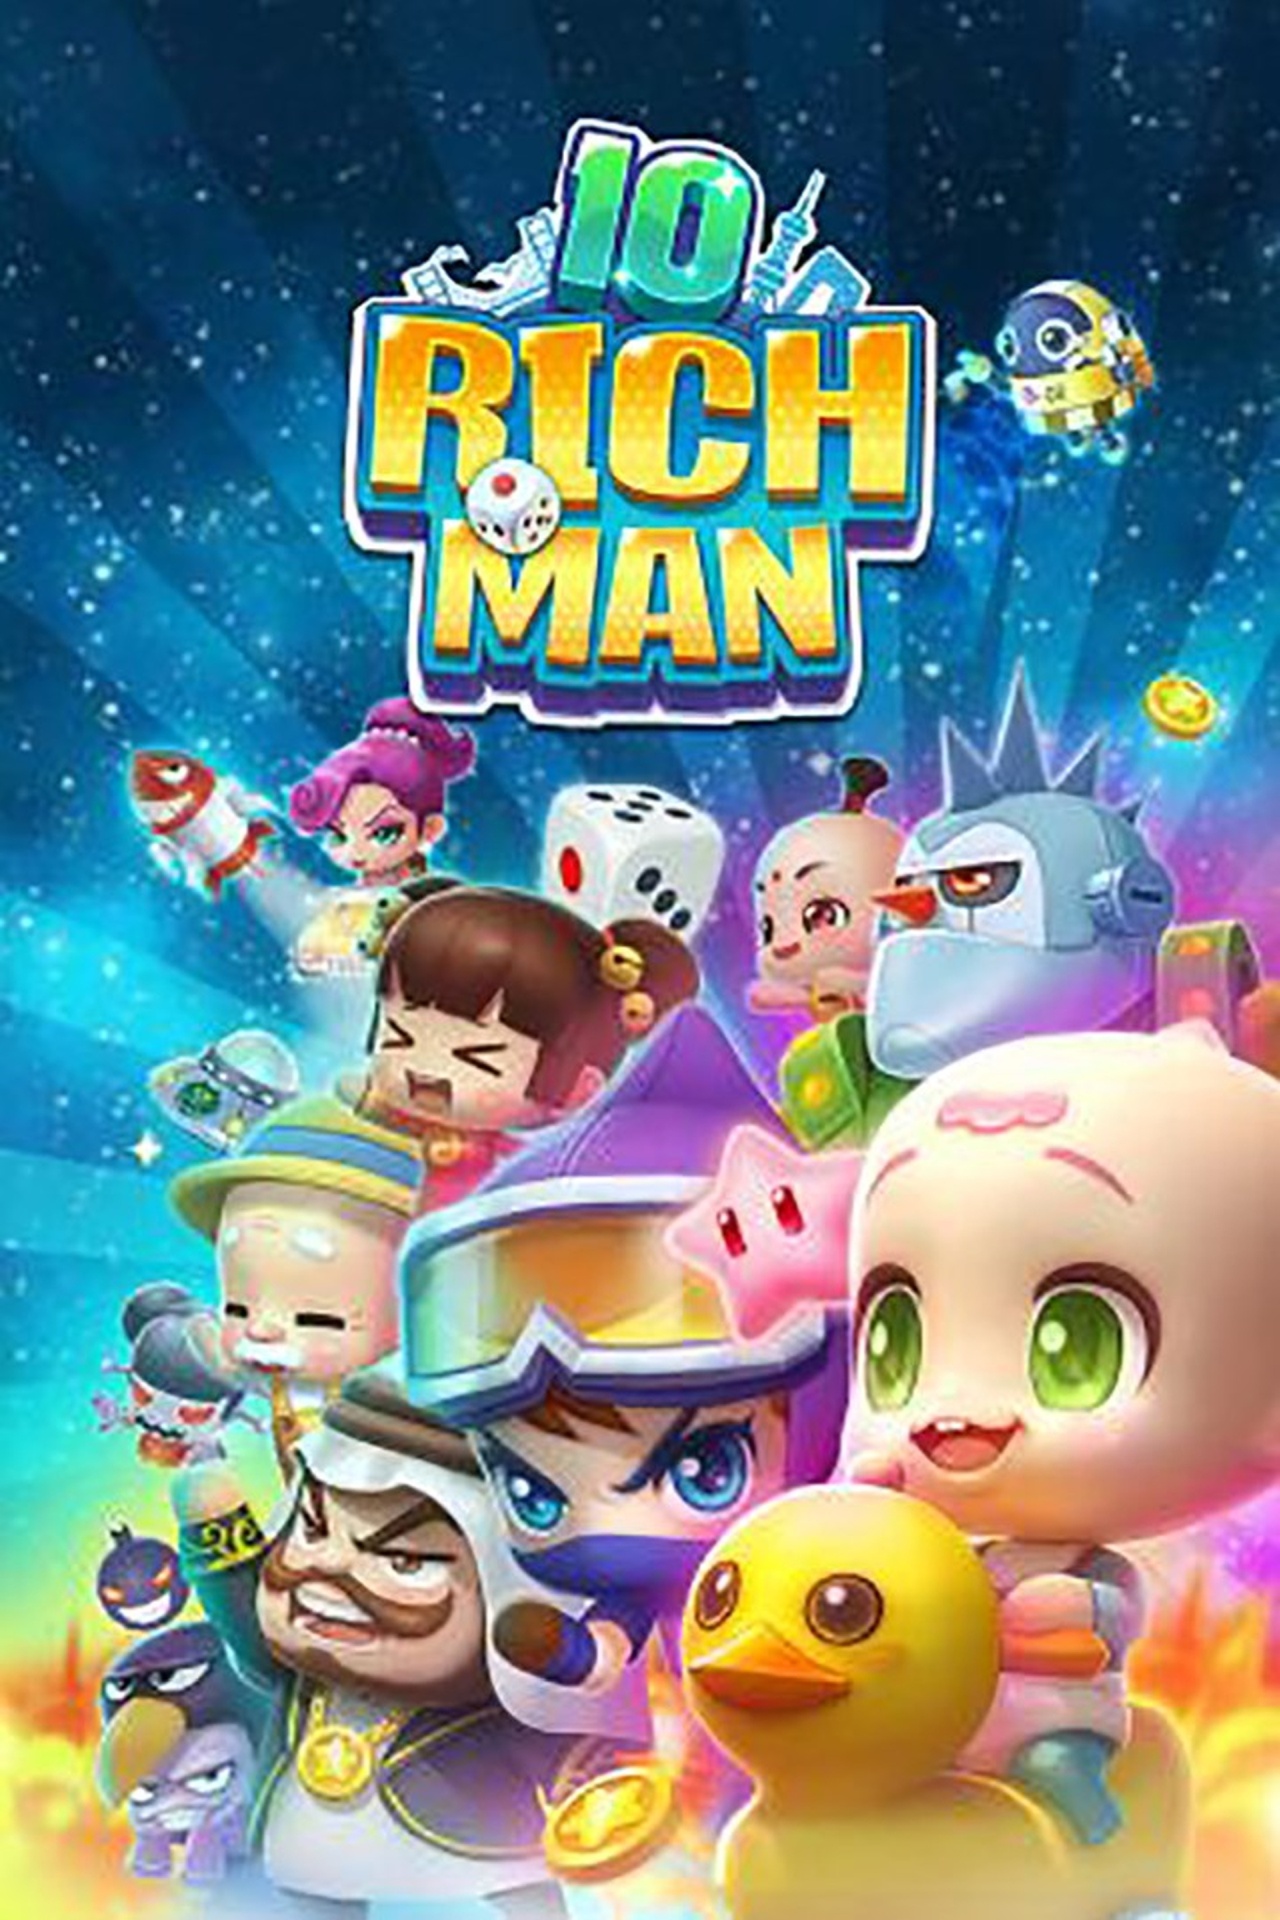 Next Week on Xbox: Neue Spiele vom 22. bis zum 26. August: Richman 10